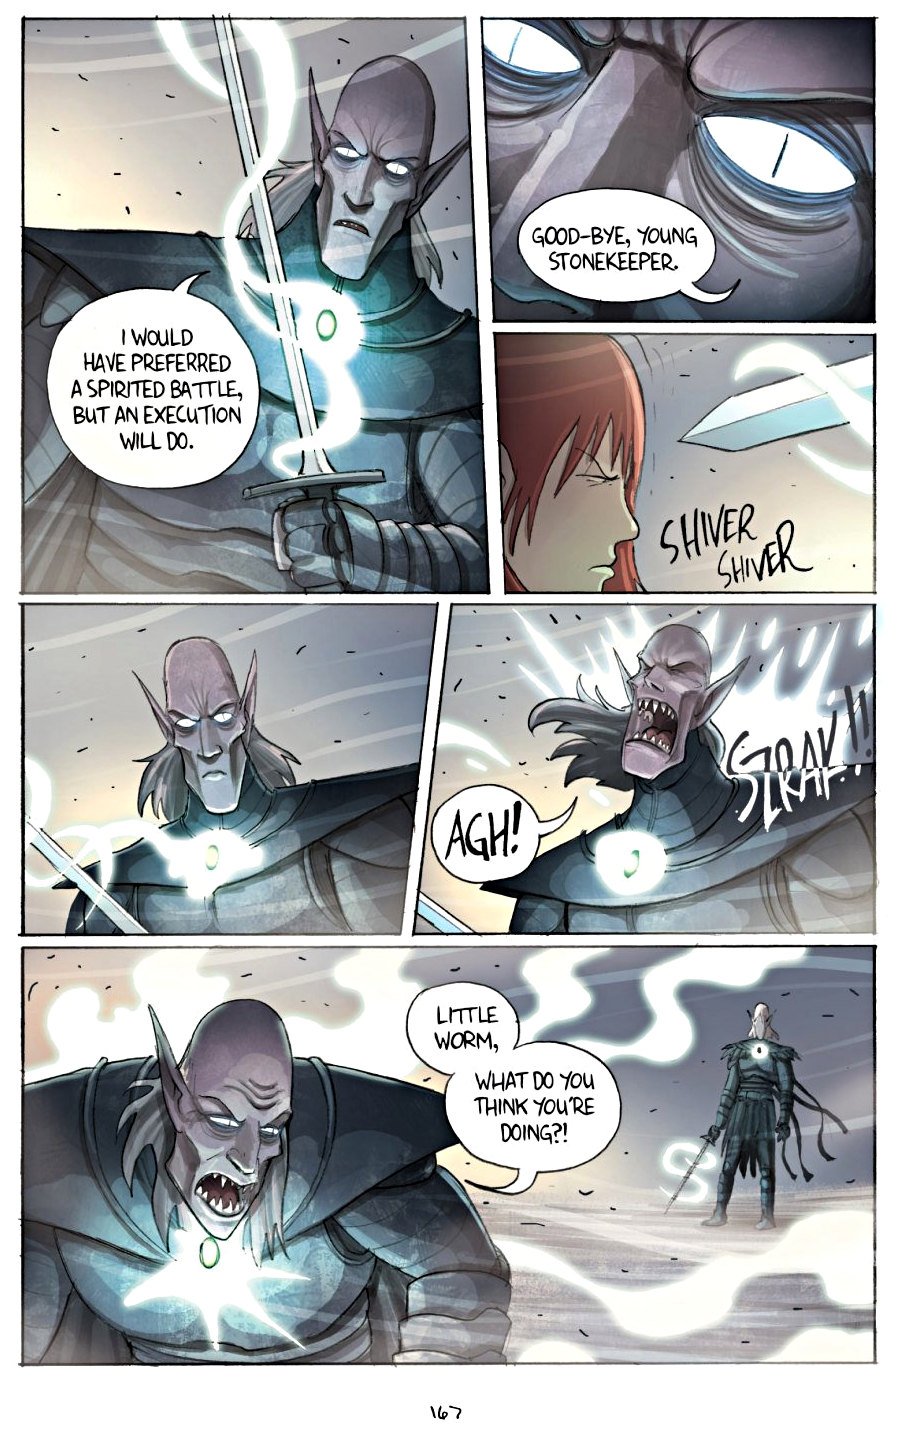 page 167 of amulet 2 stonekeeper's curse graphic novel by kazu kibuishi